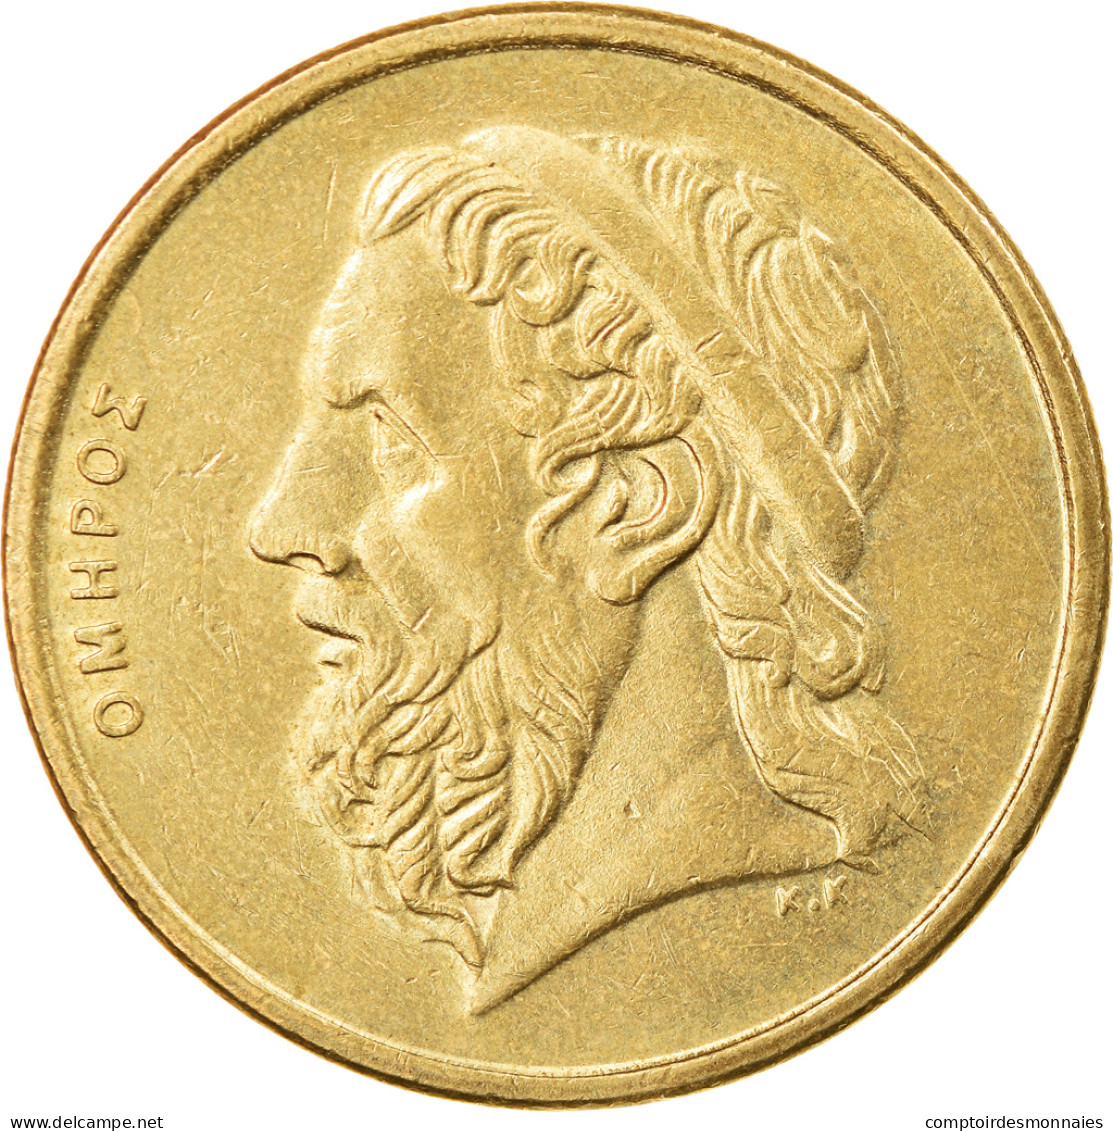 Monnaie, Grèce, 50 Drachmes, 1990, TTB+, Aluminum-Bronze, KM:147 - Grèce